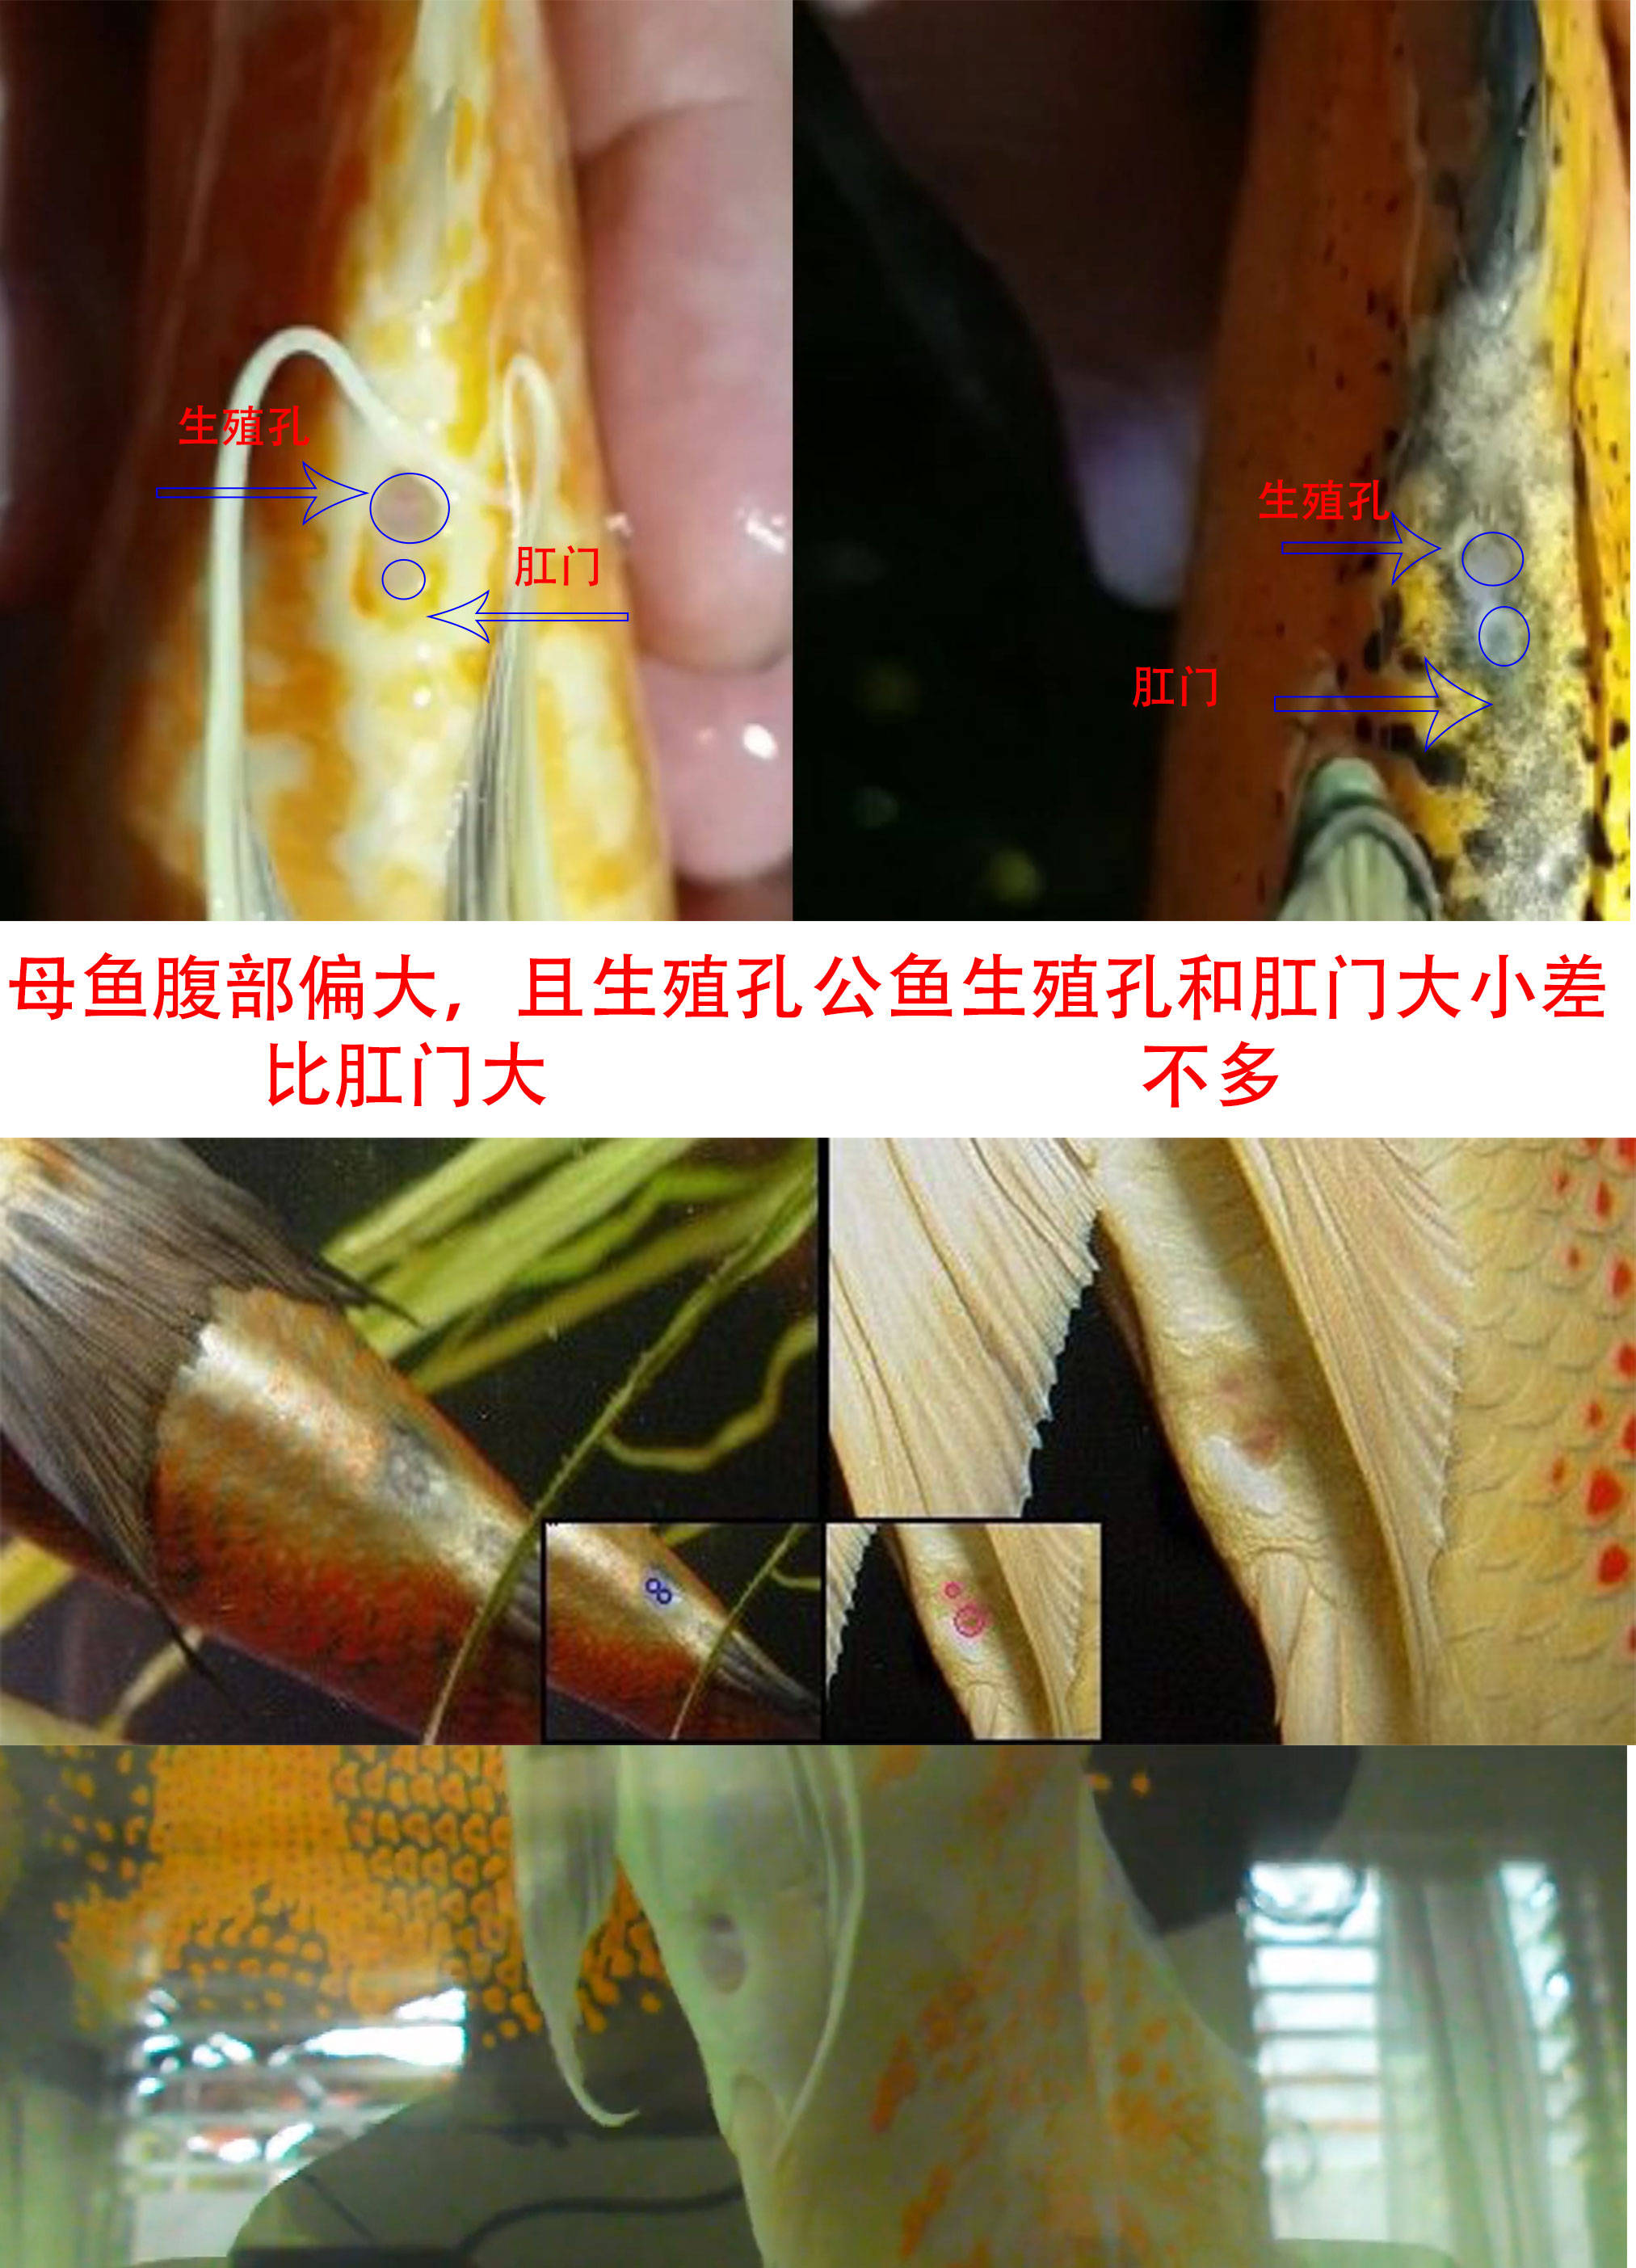 锦鲤公母肛门区分图解图片